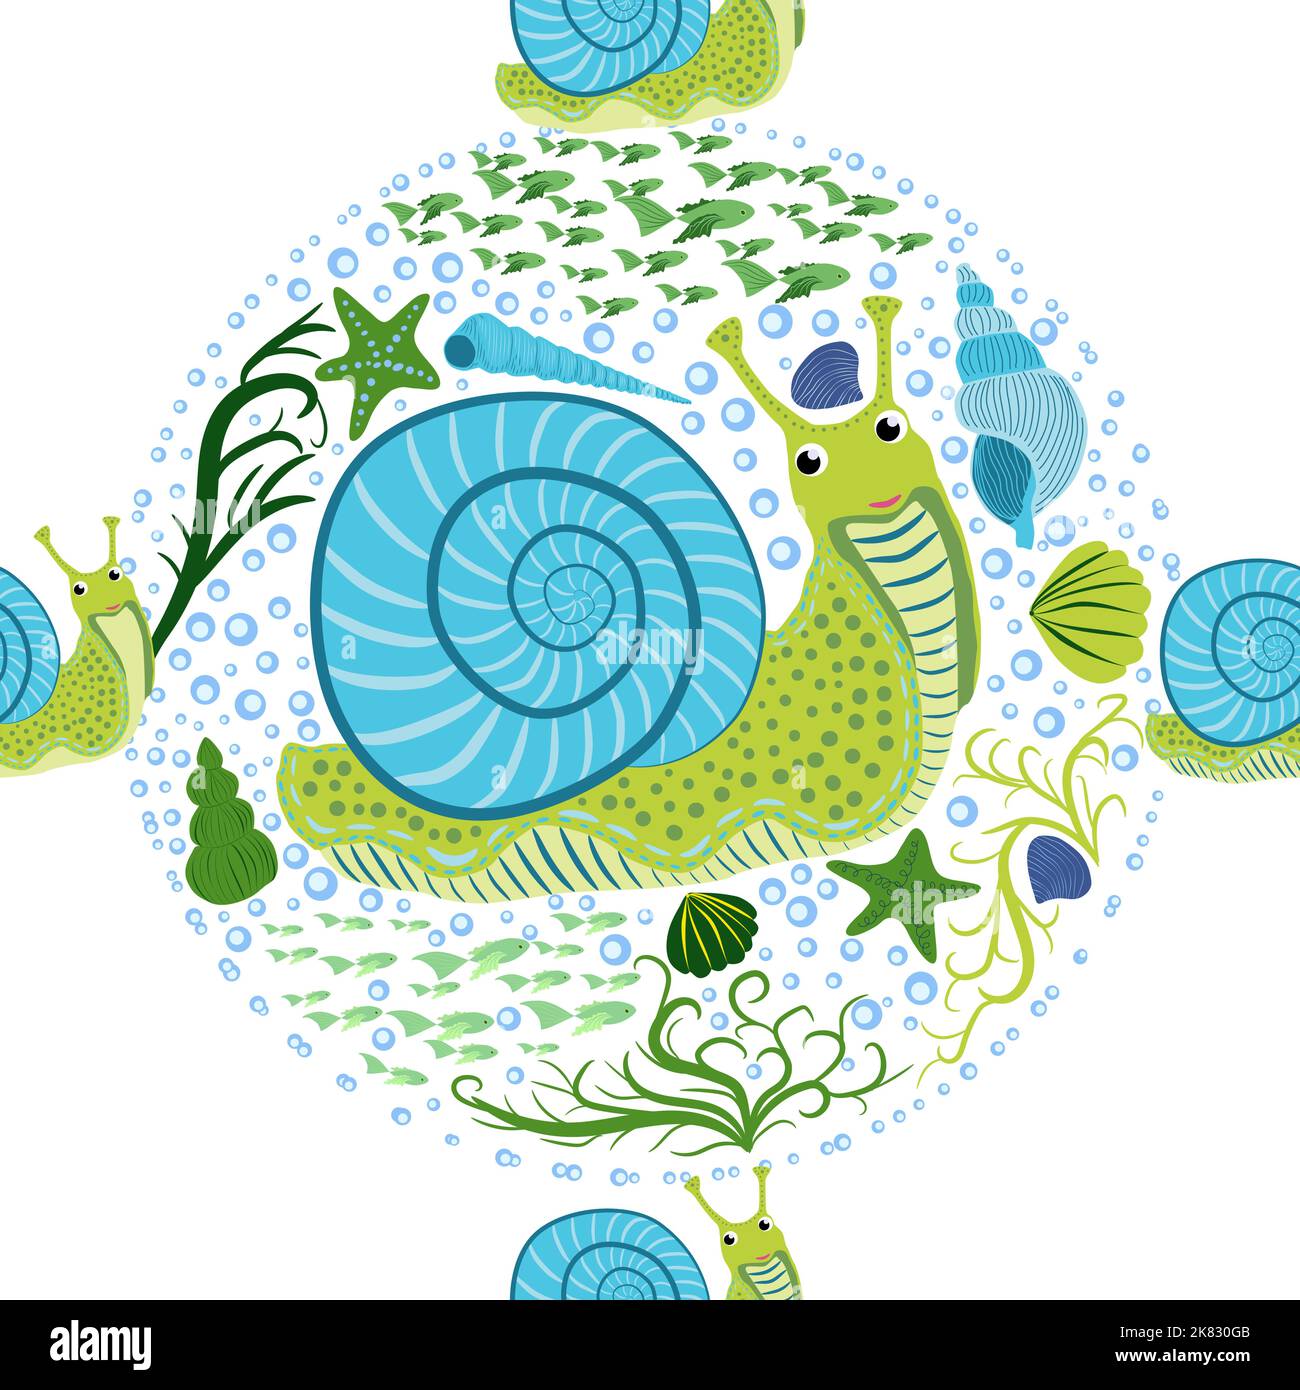 Schnecke, Seebewohner nahtloses Muster, schöner Charakter zwischen Muscheln, Algen, Seesterne, Meerestiere der Tierwelt. Stock Vektor